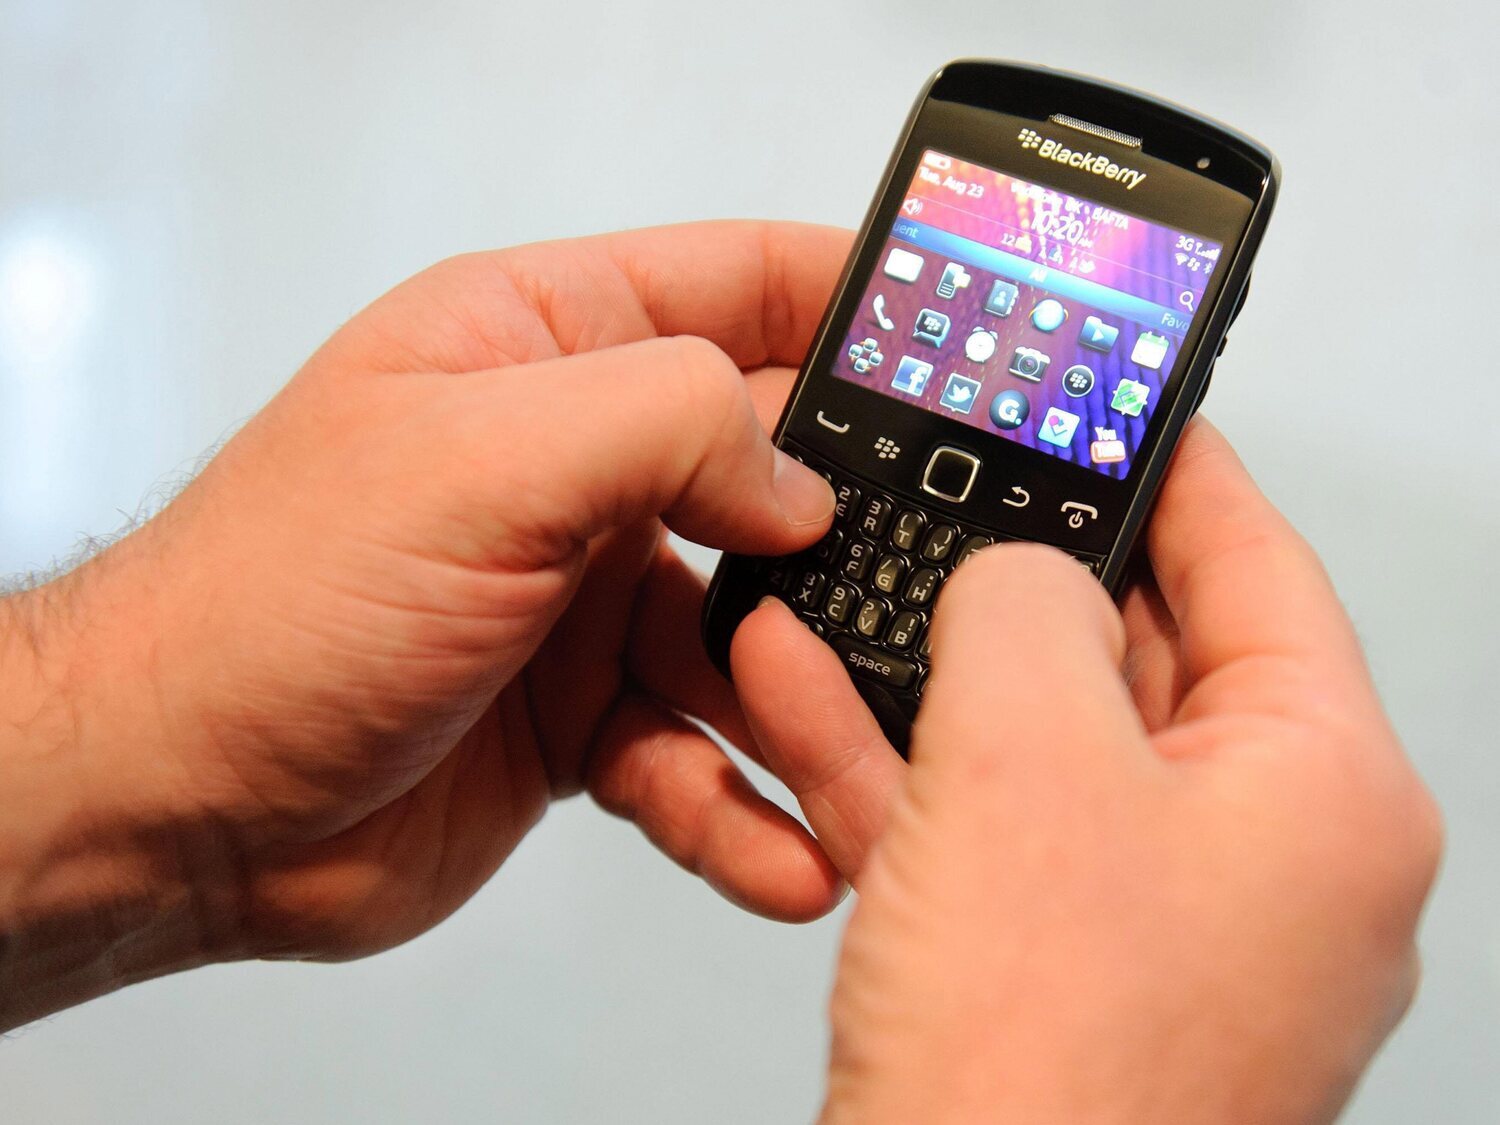 BlackBerry dice adiós definitivo y anuncia que dejará de estar operativa